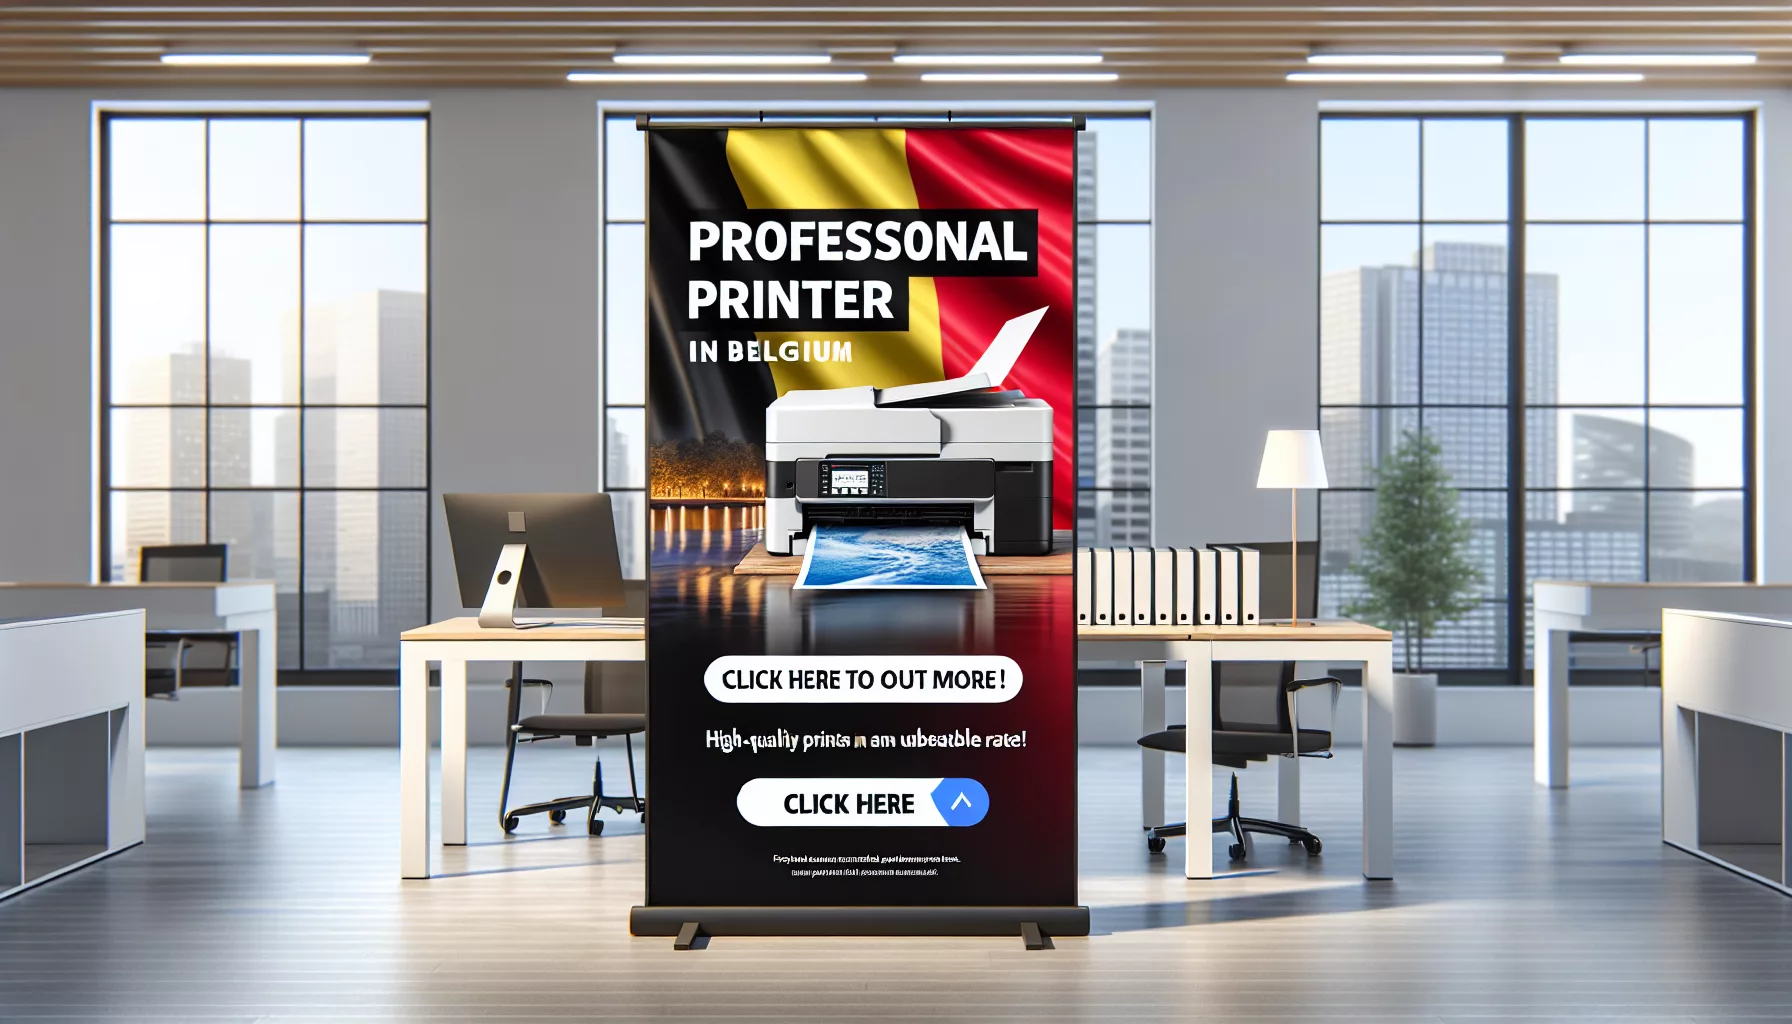 découvrez les tarifs de location d'imprimante professionnelle en belgique et trouvez la solution adaptée à vos besoins professionnels avec notre service de location d'imprimante professionnelle en belgique.